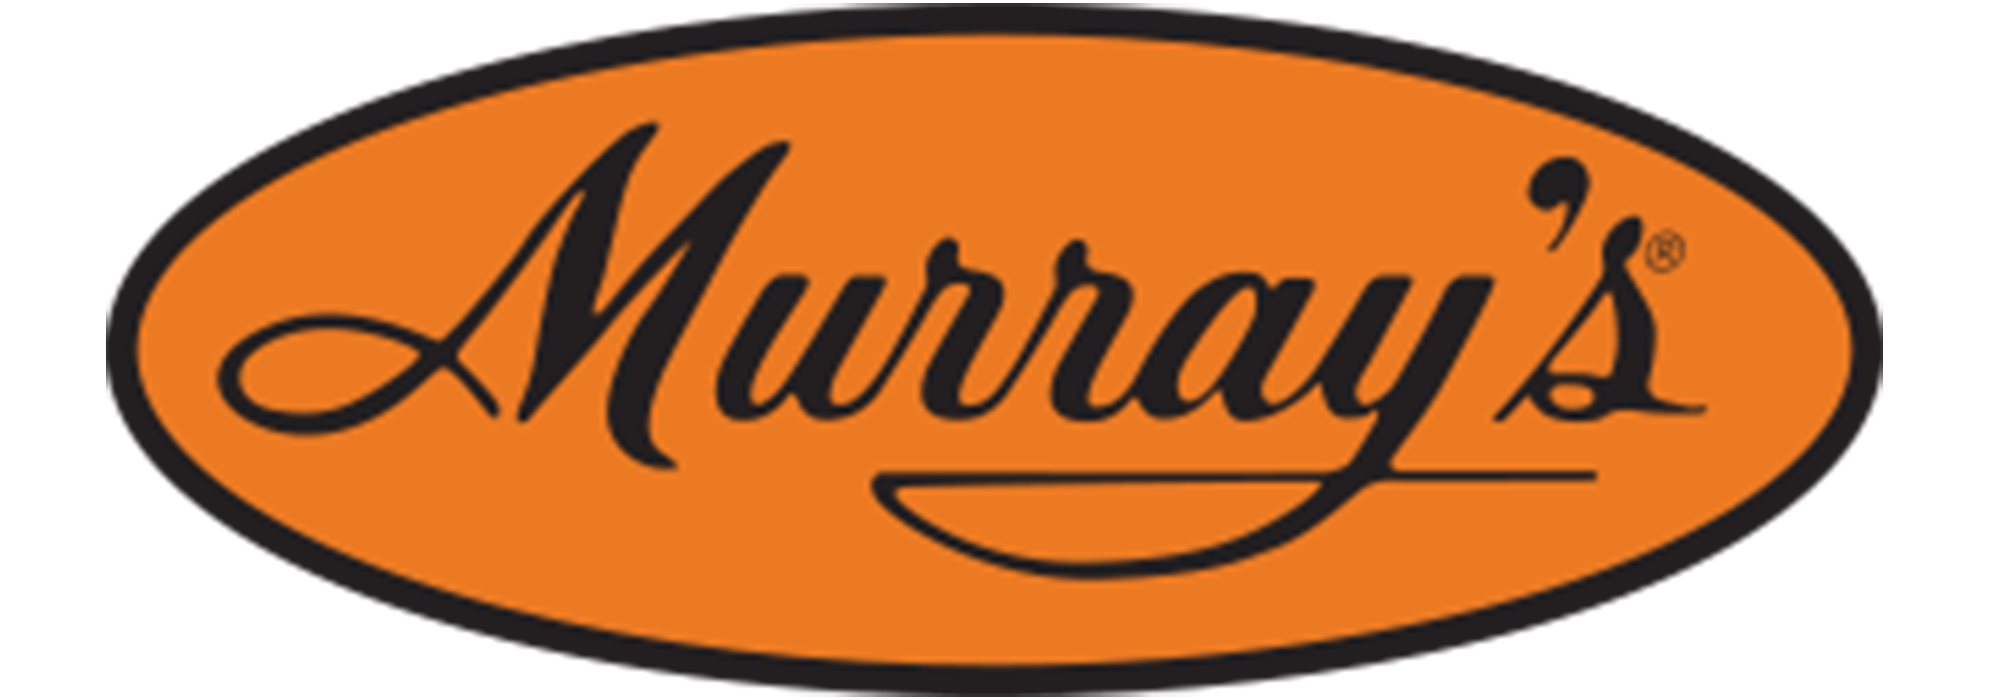 Murray's - Murray's, Hair Dressing Pomade, Superior (3 oz), Shop